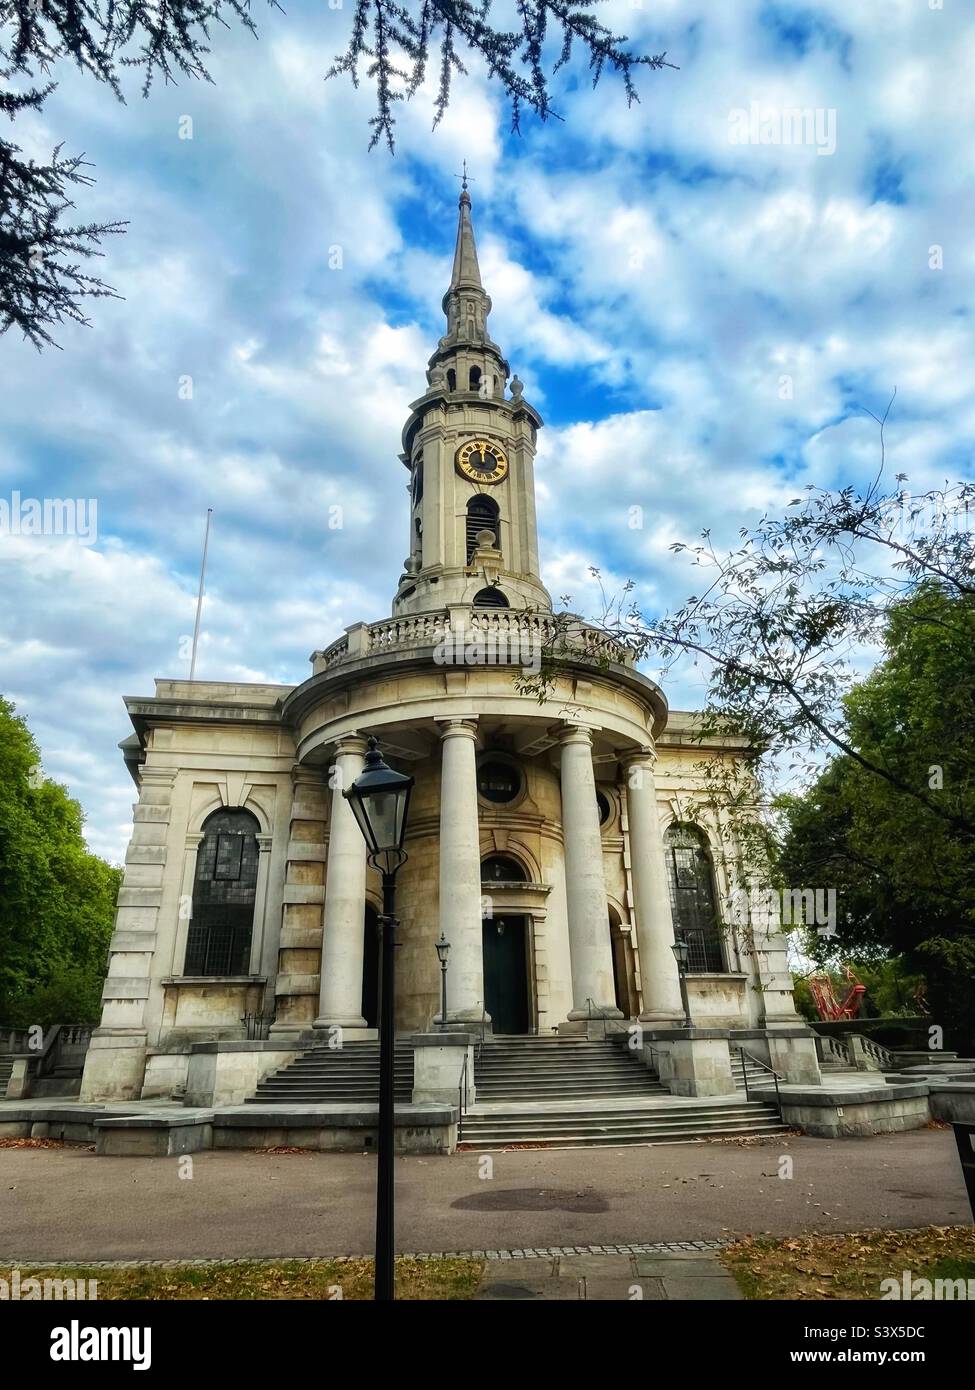 St. Paul’s Parish Church, Deptford. Entworfen von Thomas Archer nach einem Gesetz von 1711 für den Bau neuer Kirchen in London und seinen wachsenden Vororten, ist es eine ‘Queen Anne Church’. Klasse I aufgeführt Stockfoto